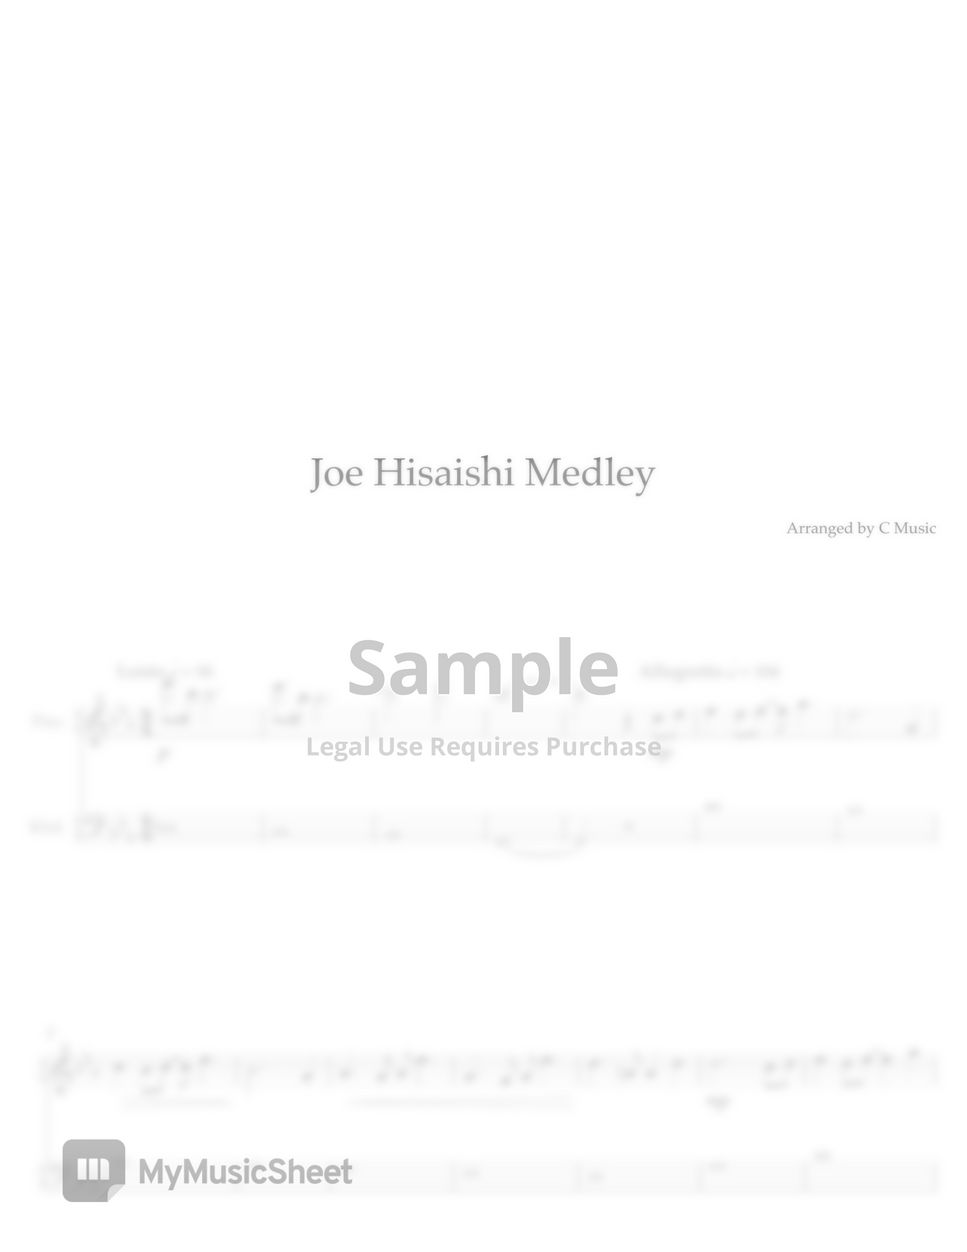 Joe Hisaishi - Joe Hisaishi Medley (Easy) by C Music